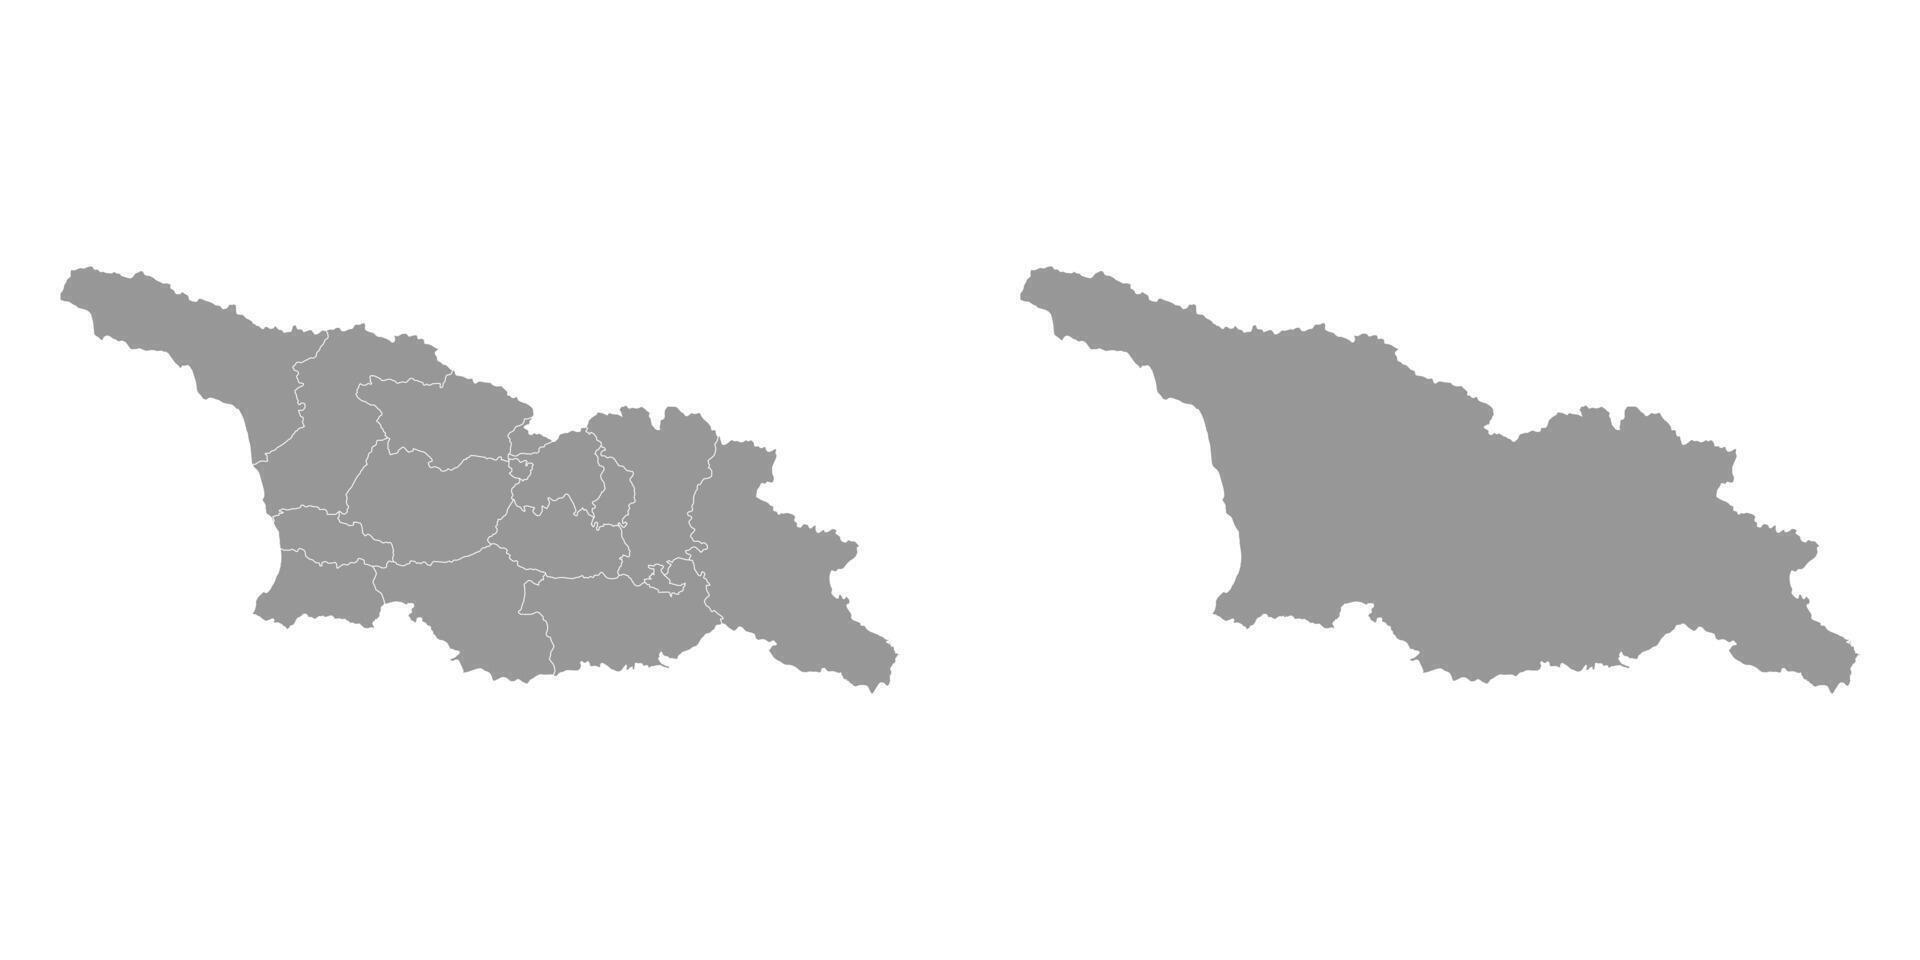 gris mapa de Georgia con administrativo divisiones y anexo territorios. vector ilustración.